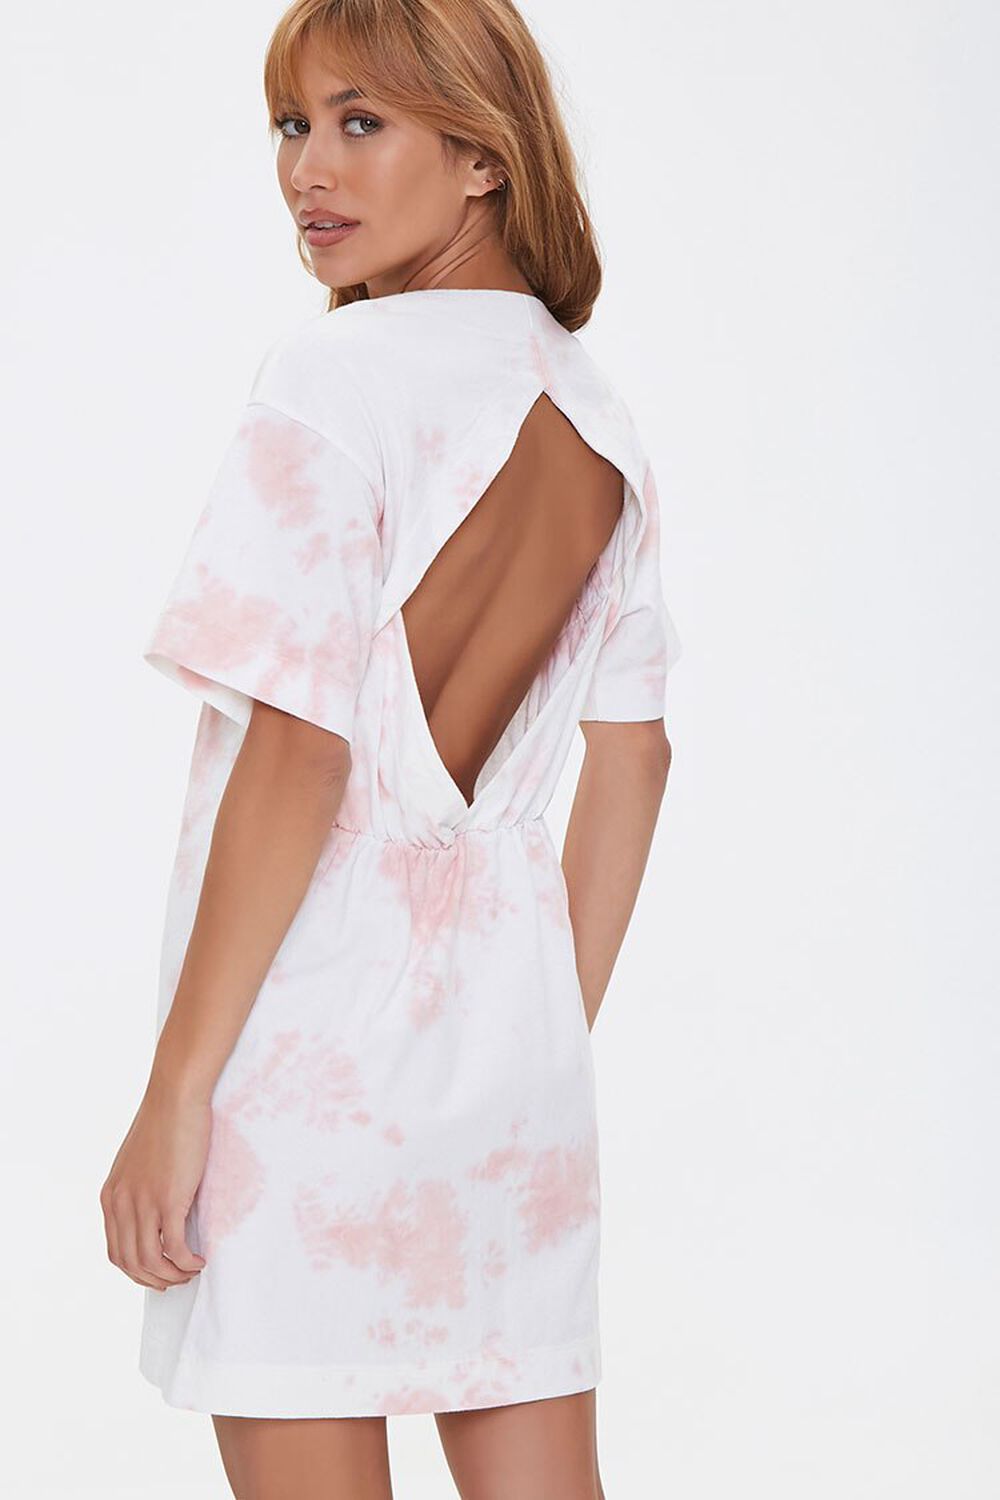 ROSE/WHITE Tie-Dye Cutout T-Shirt Dress, image 1